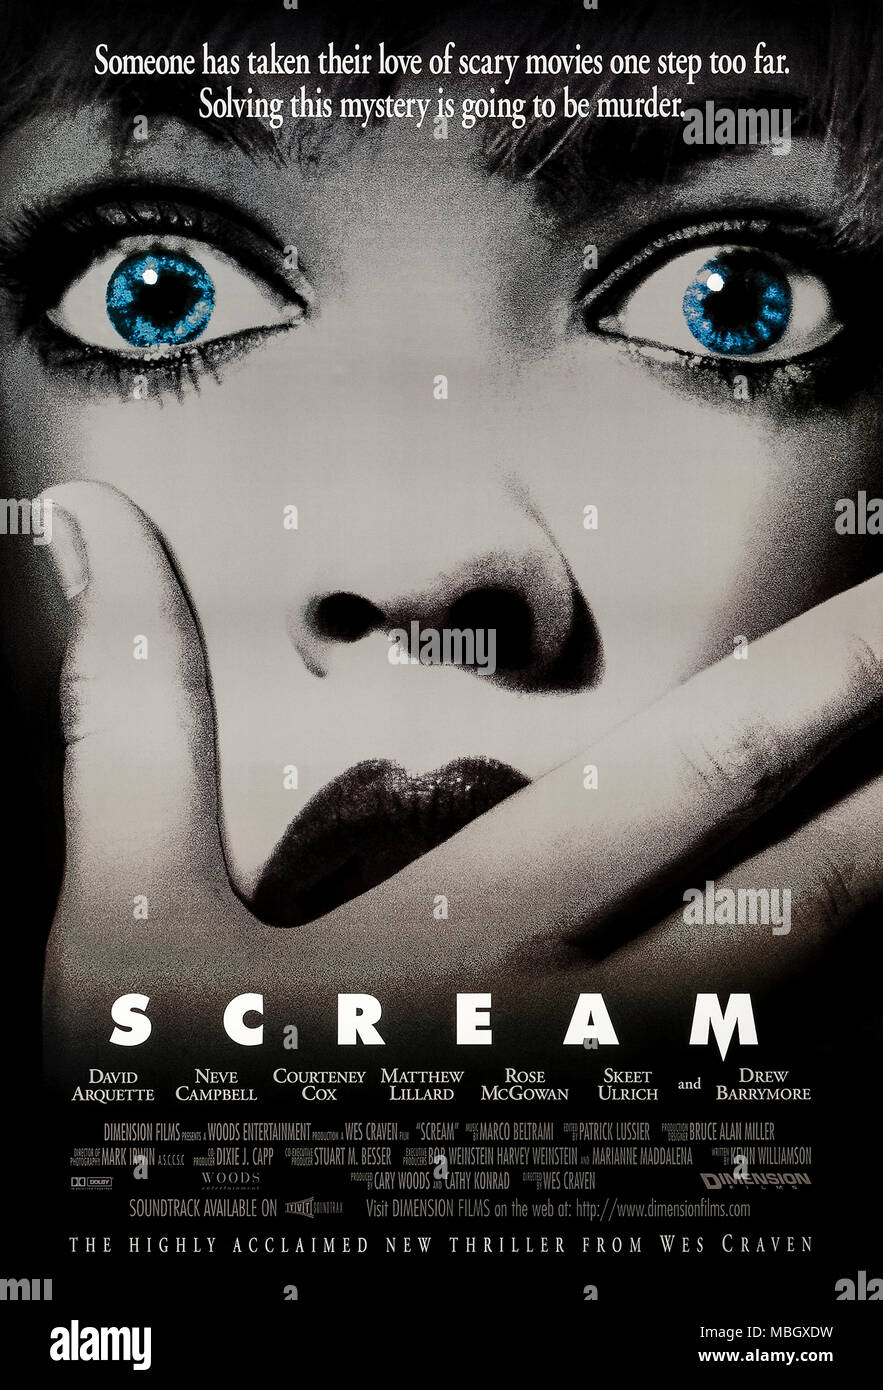 Scream (1996) réalisé par Wes Craven avec Neve Campbell, Courteney Cox et David Arquette. Un tueur en série terrorise un adolescent et ses amis à l'aide de stéréotypes mémorables des films d'horreur du passé. Quel est votre film d'horreur ? Banque D'Images